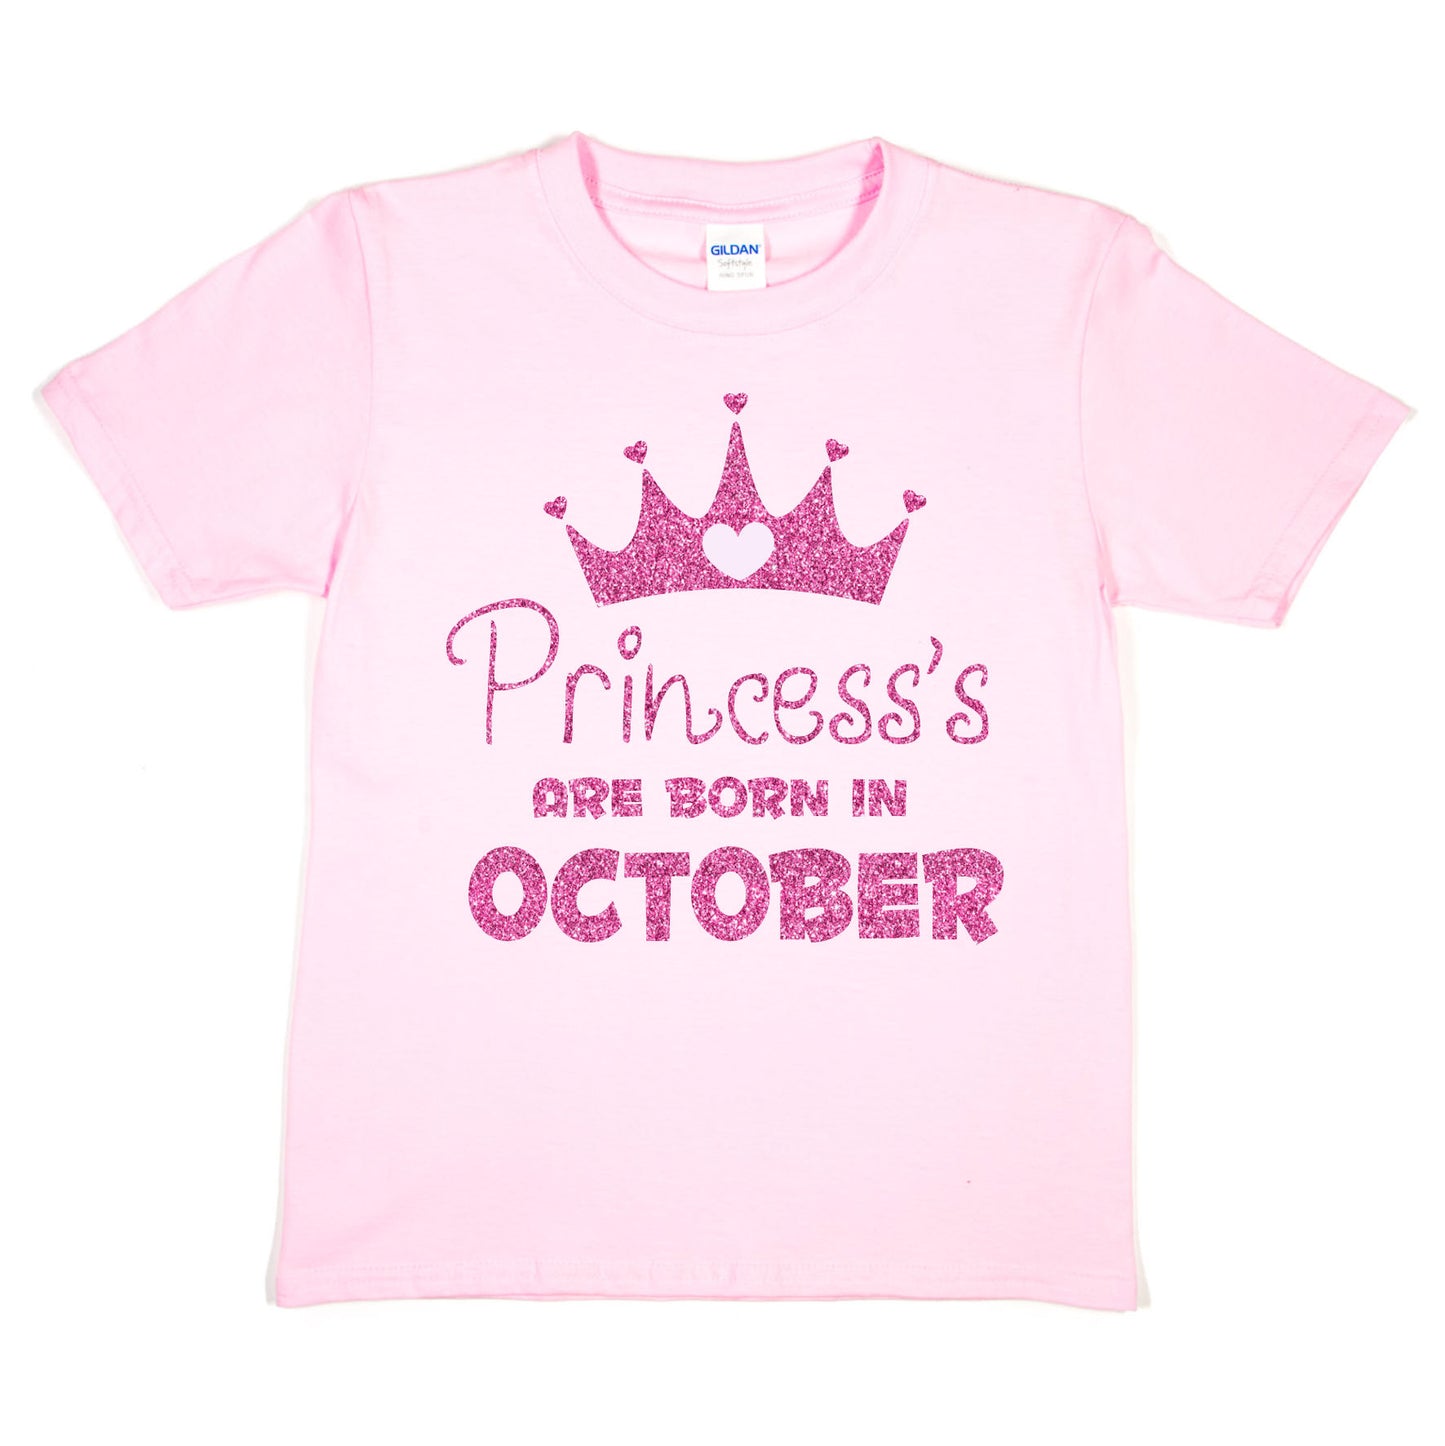 Birthday Girls T-shirt Princess's Born In October T-Shirt